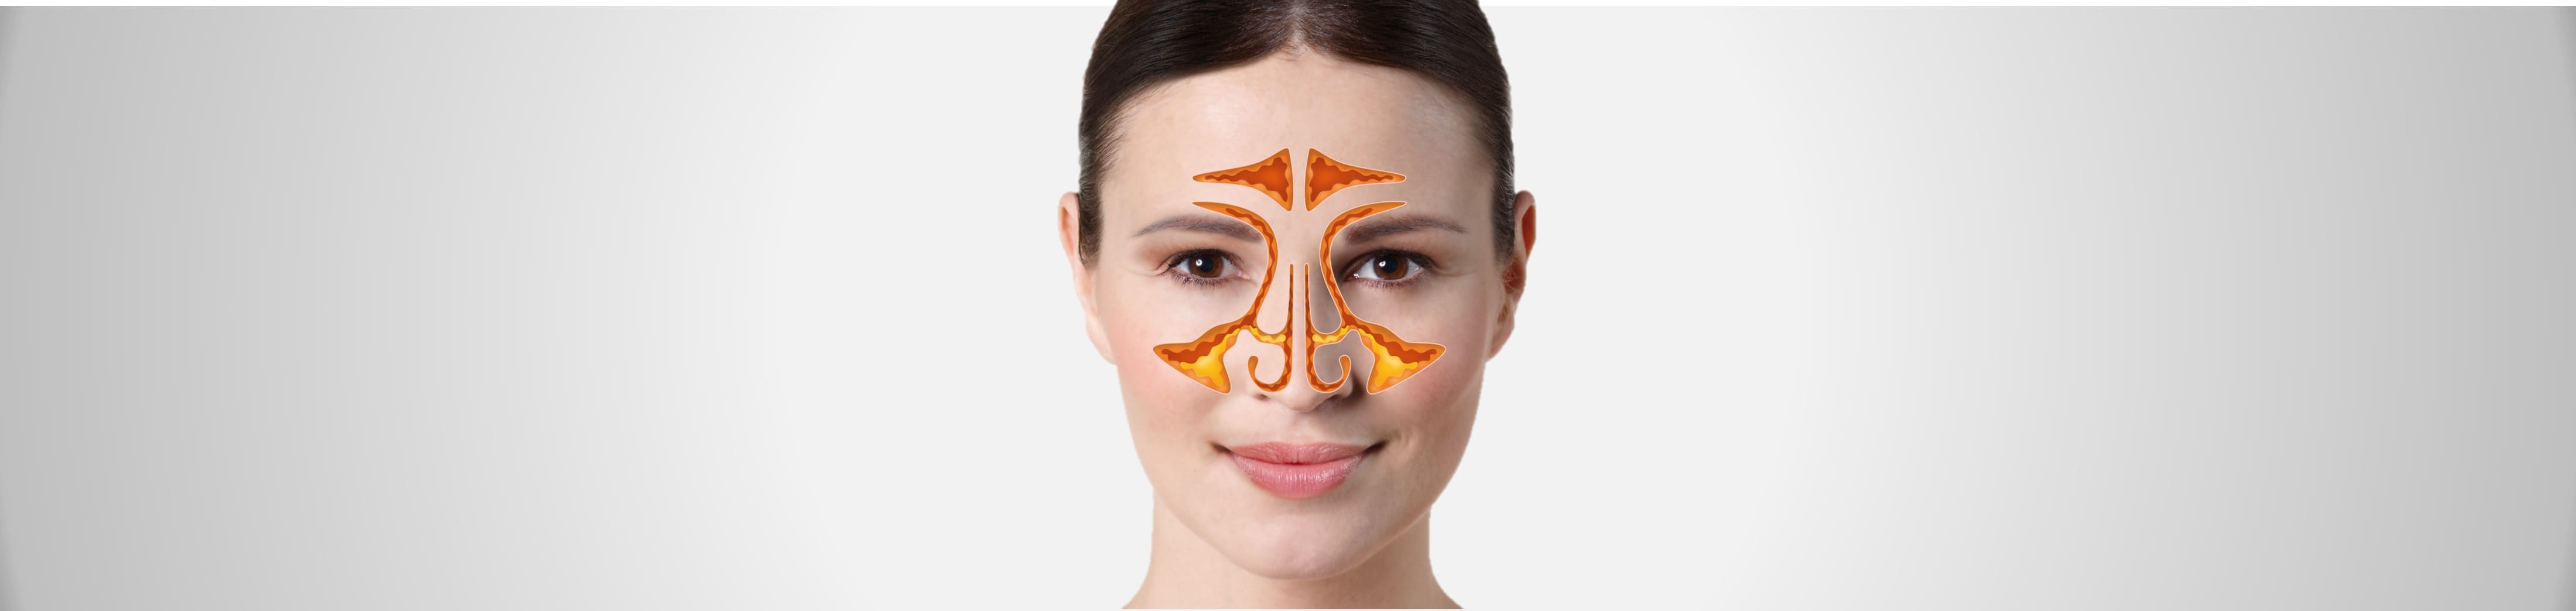 Header - Anatomie der Nase